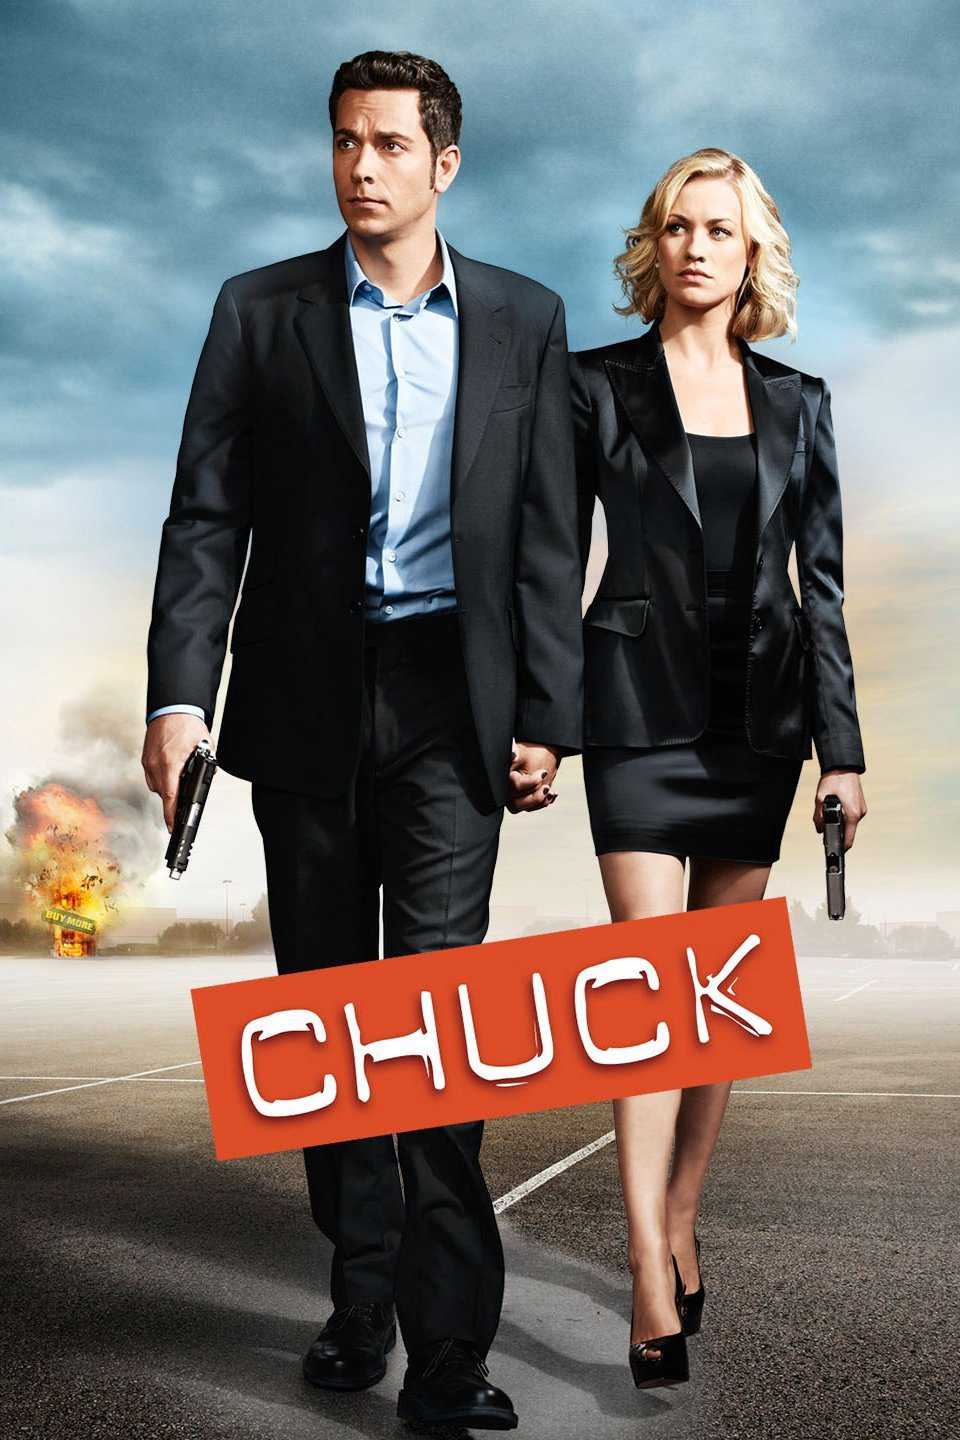 Điệp Viên Chuck Phần 4 - Chuck (Season 4)